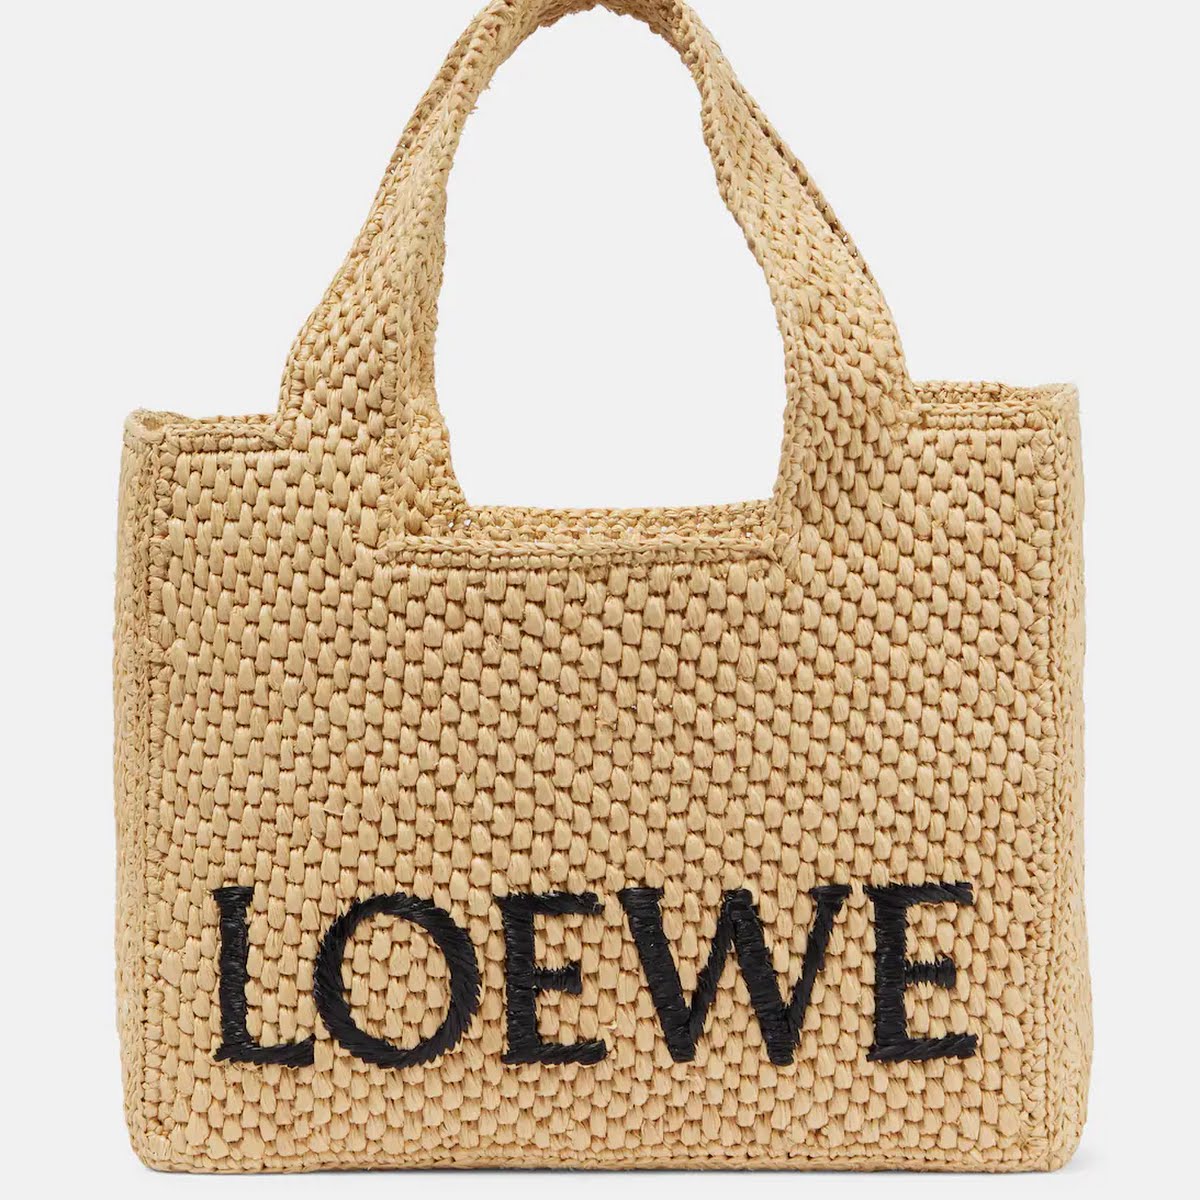 Loewe Paula's Ibiza Basket Bag, €850, MyTheresa